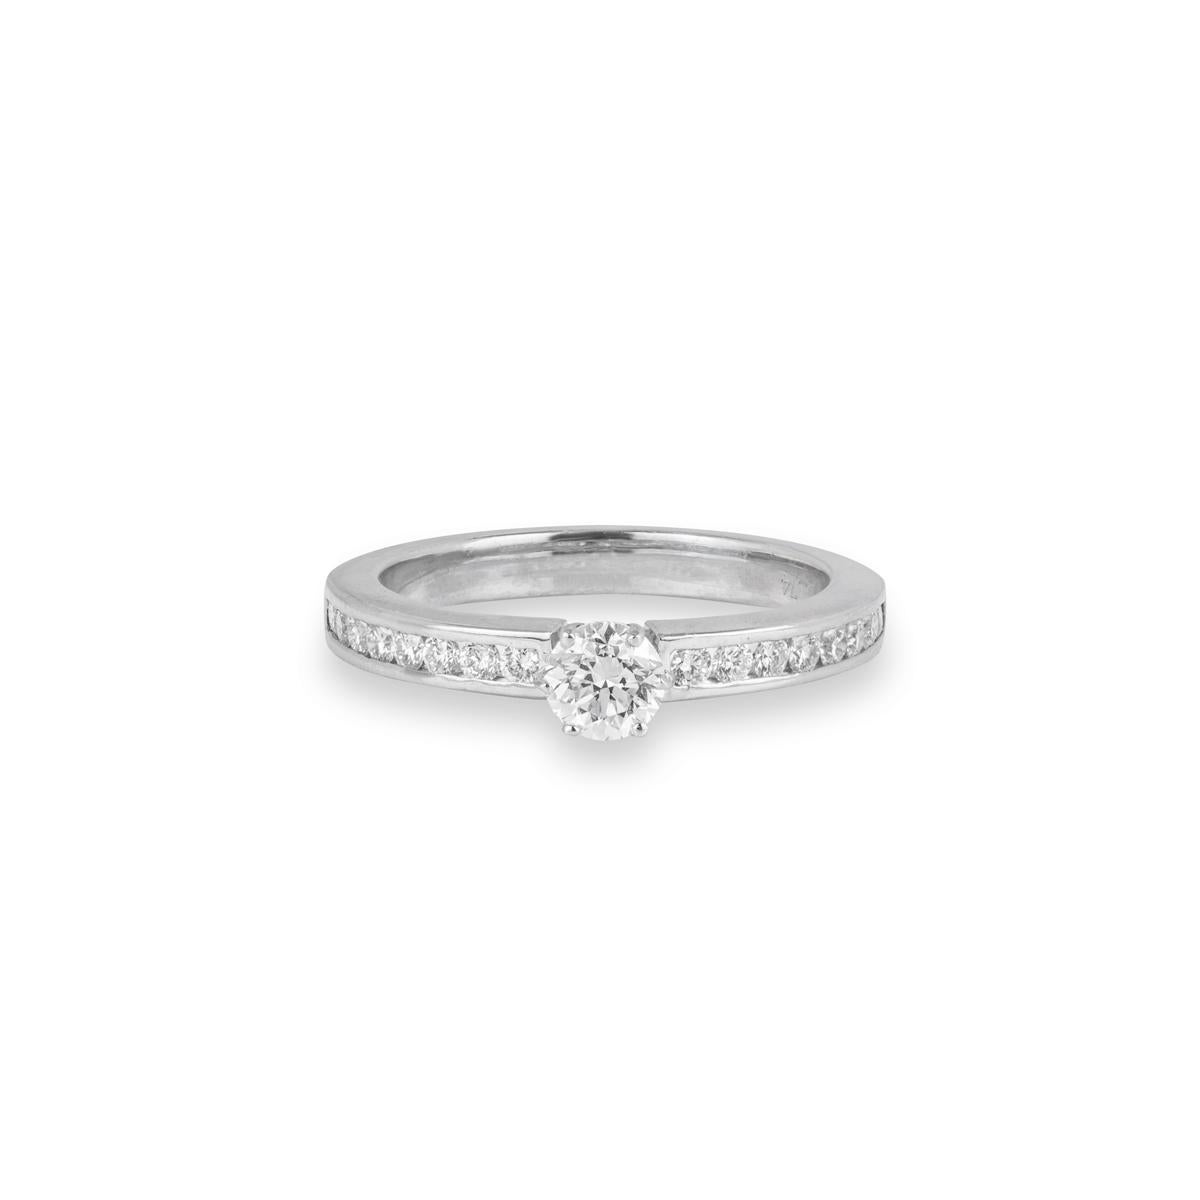 Contemporary White Gold Round Brilliant Cut Diamond Ring 0.39ct H/VS2 For Sale